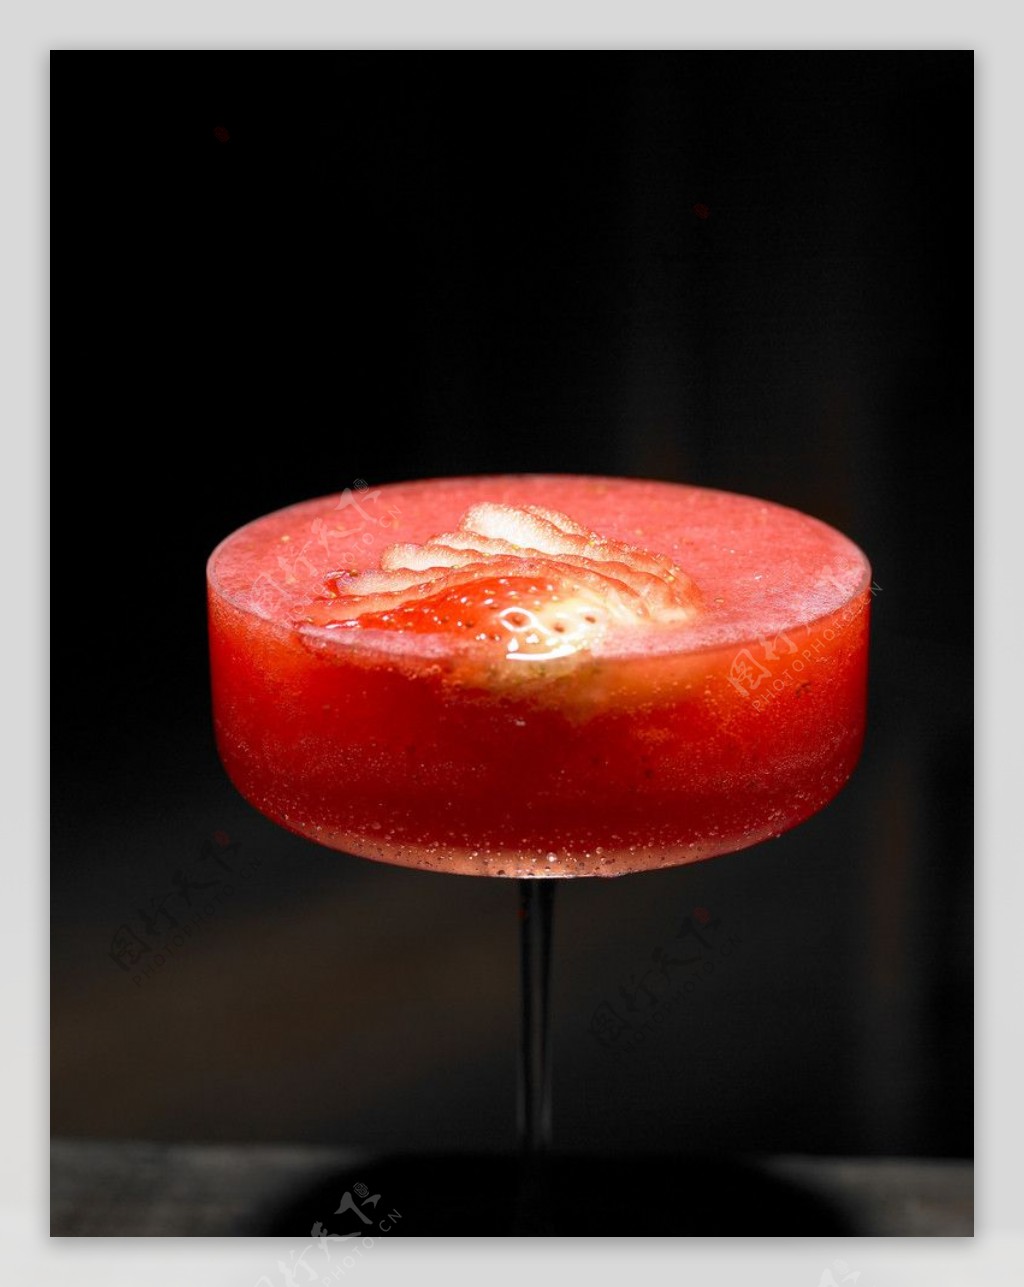 草莓鸡尾酒图片